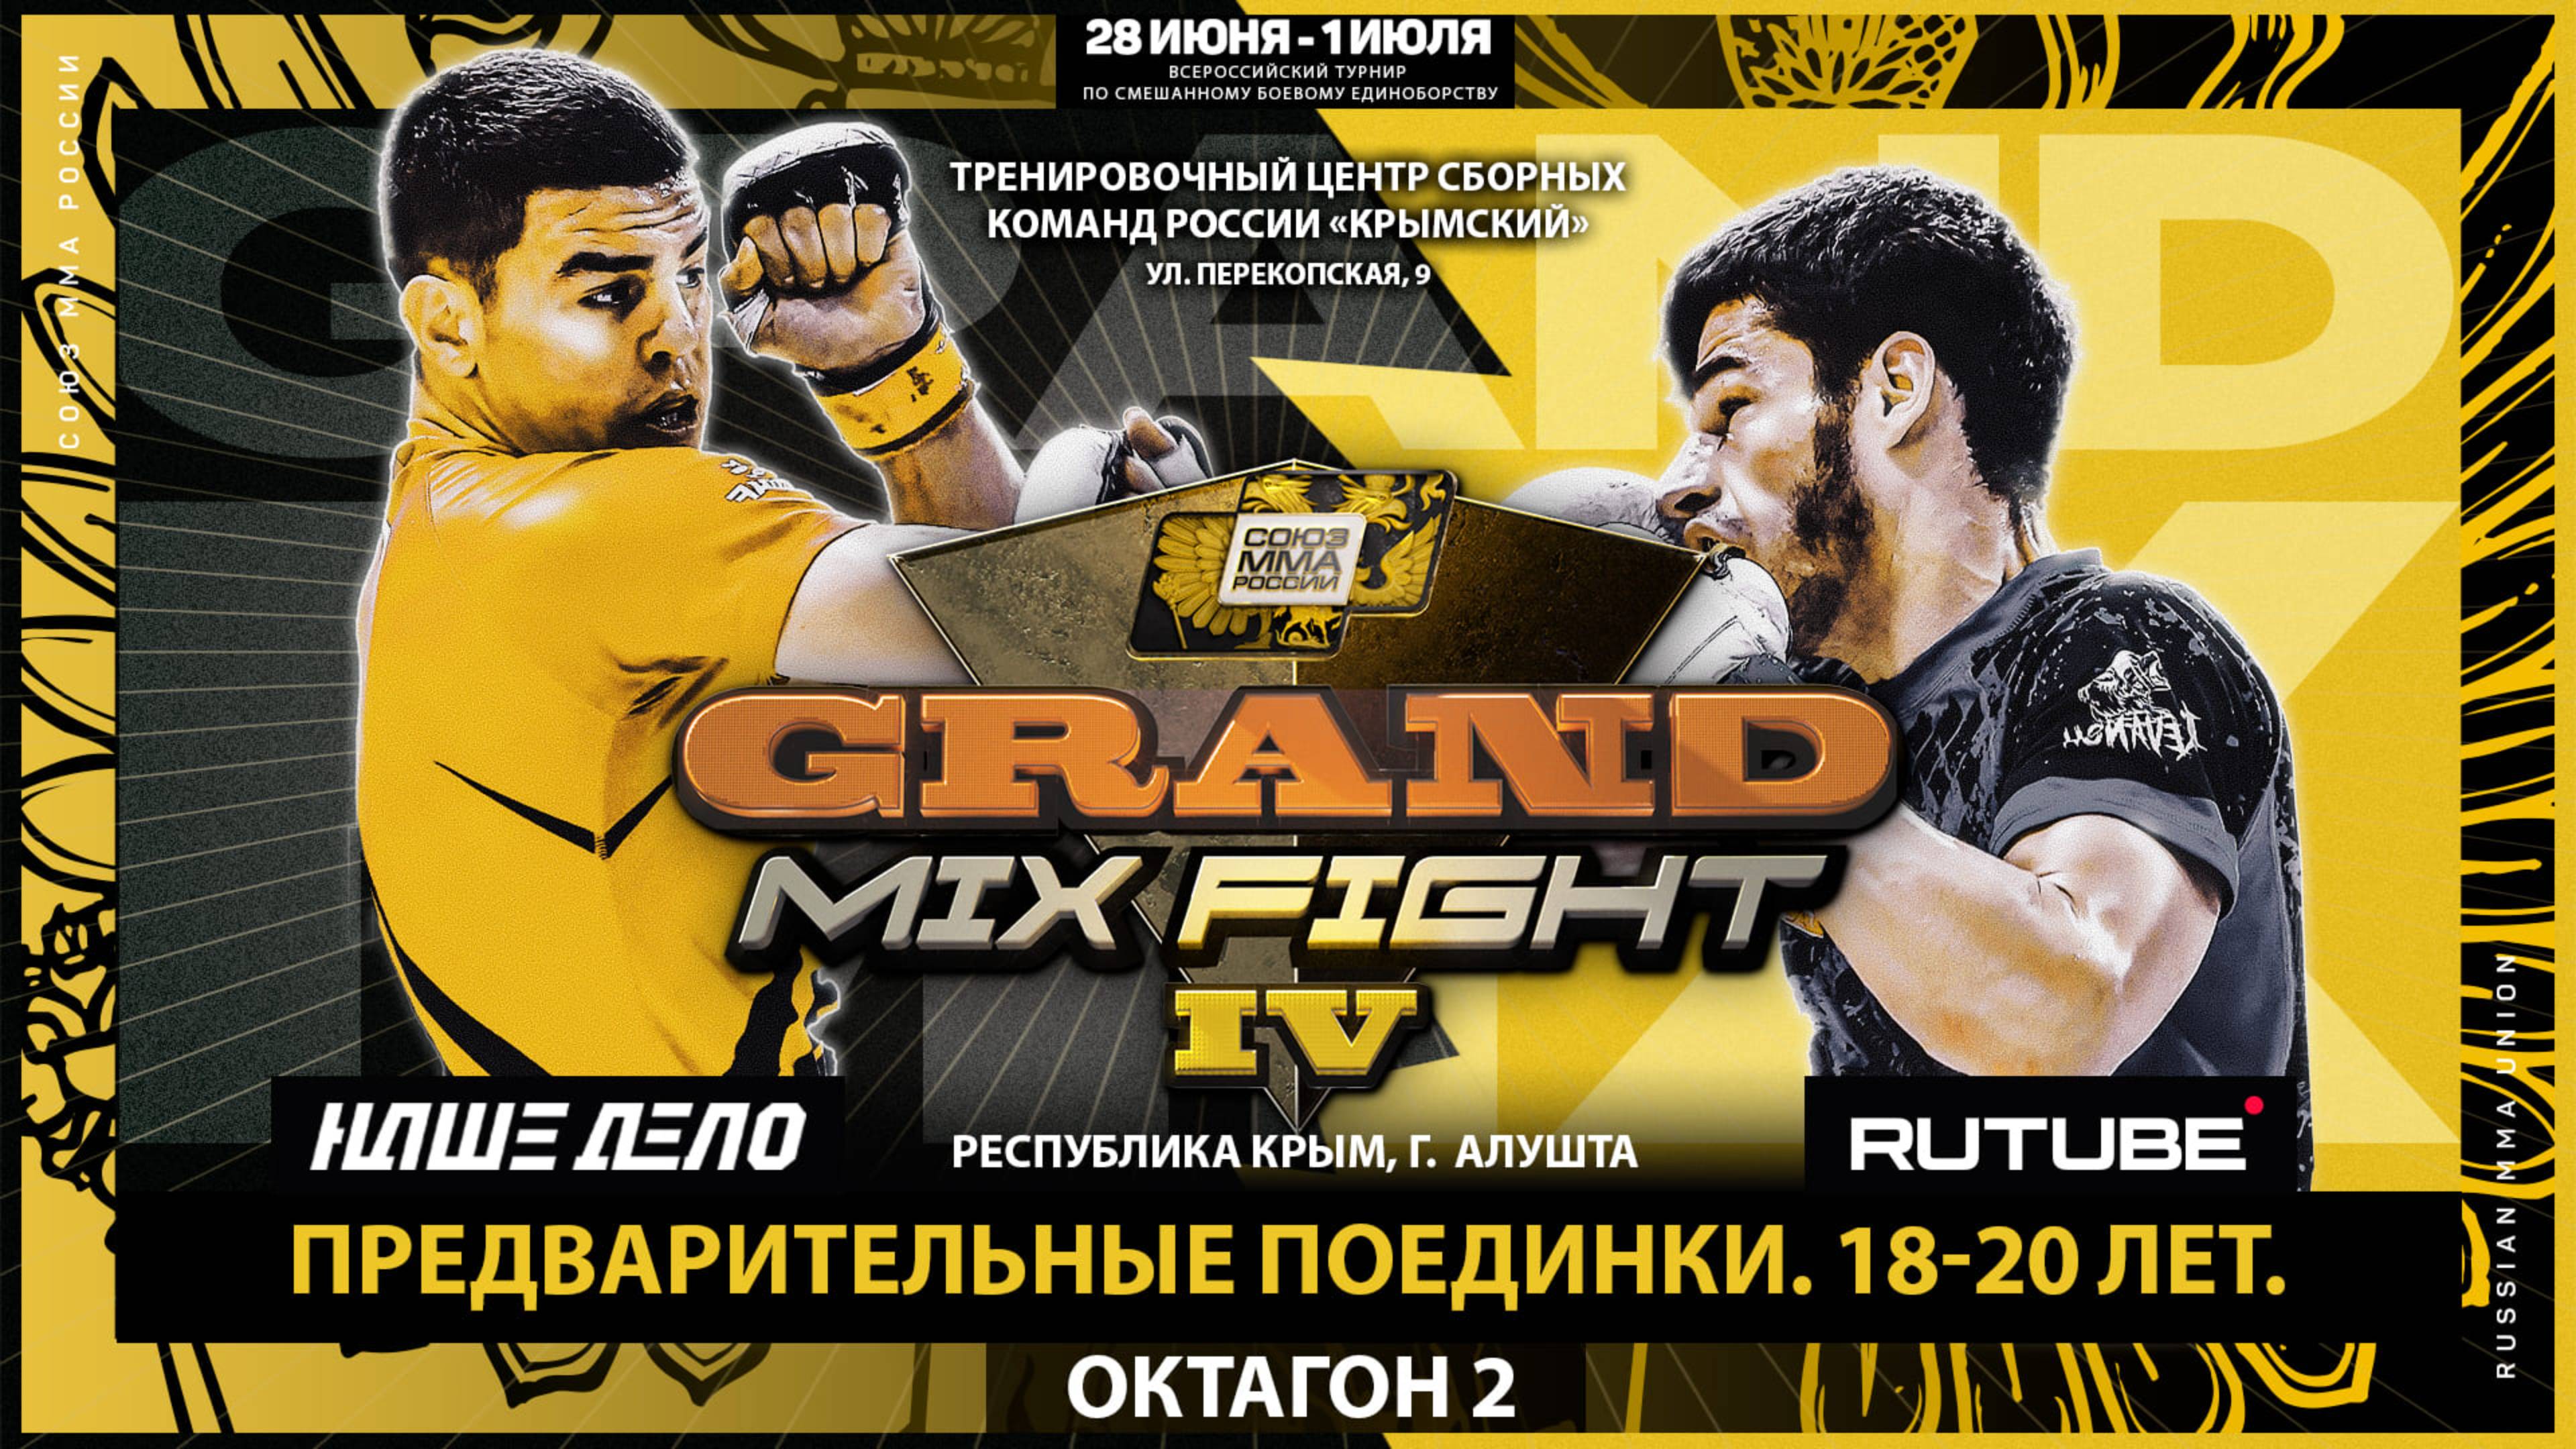 Всероссийский турнир Grand Mix Fight IV. Предварительные поединки. 16-17 лет. Октагон 2